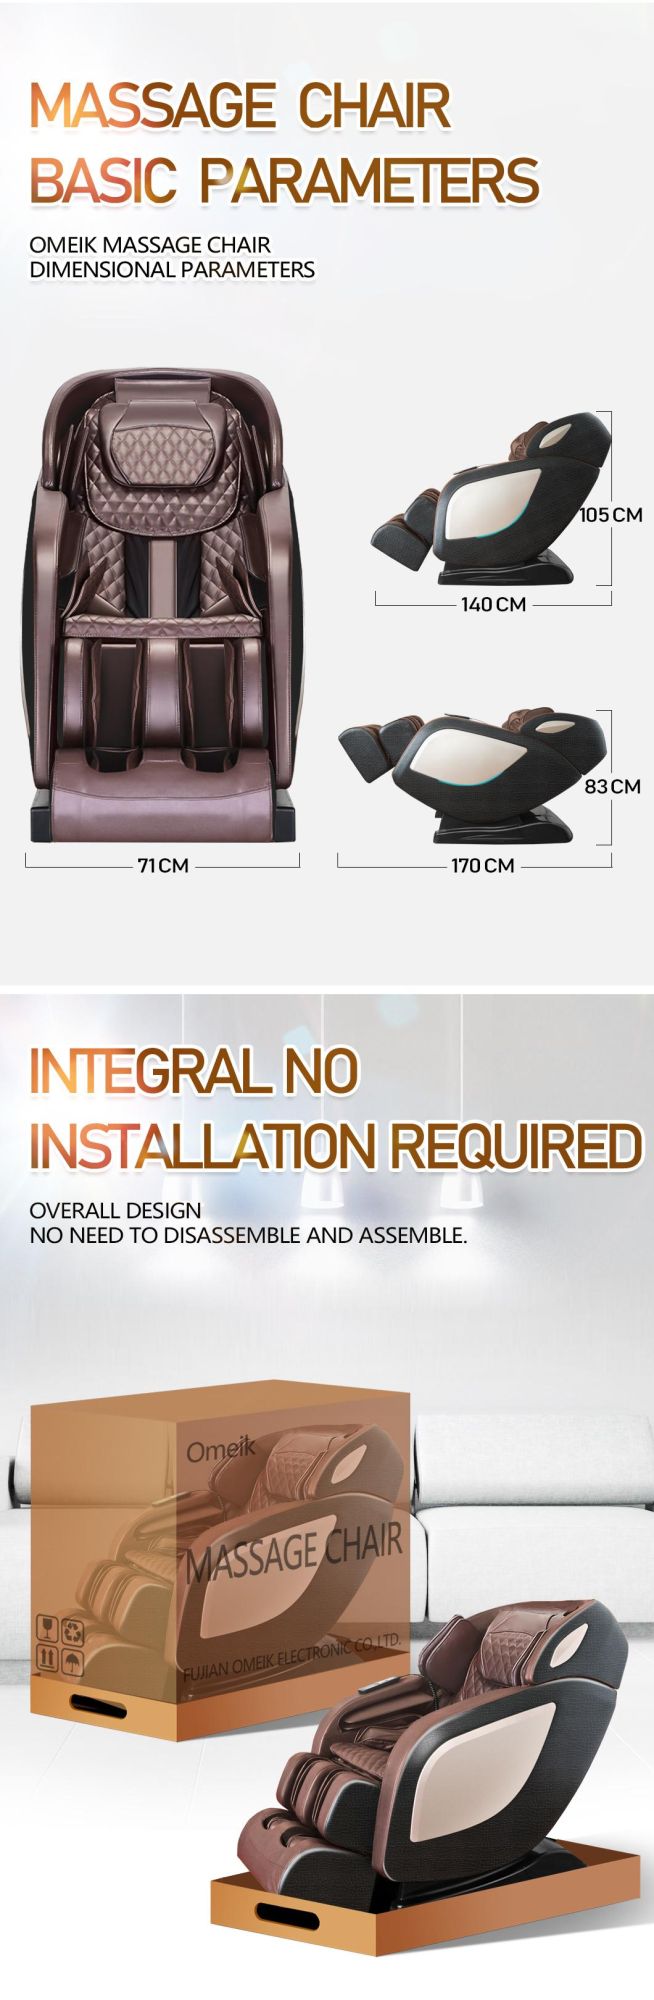 New Design Space Capsule Automatic SL-Track Zero Gravity Whole Body Shiatsu Best Massage Chair